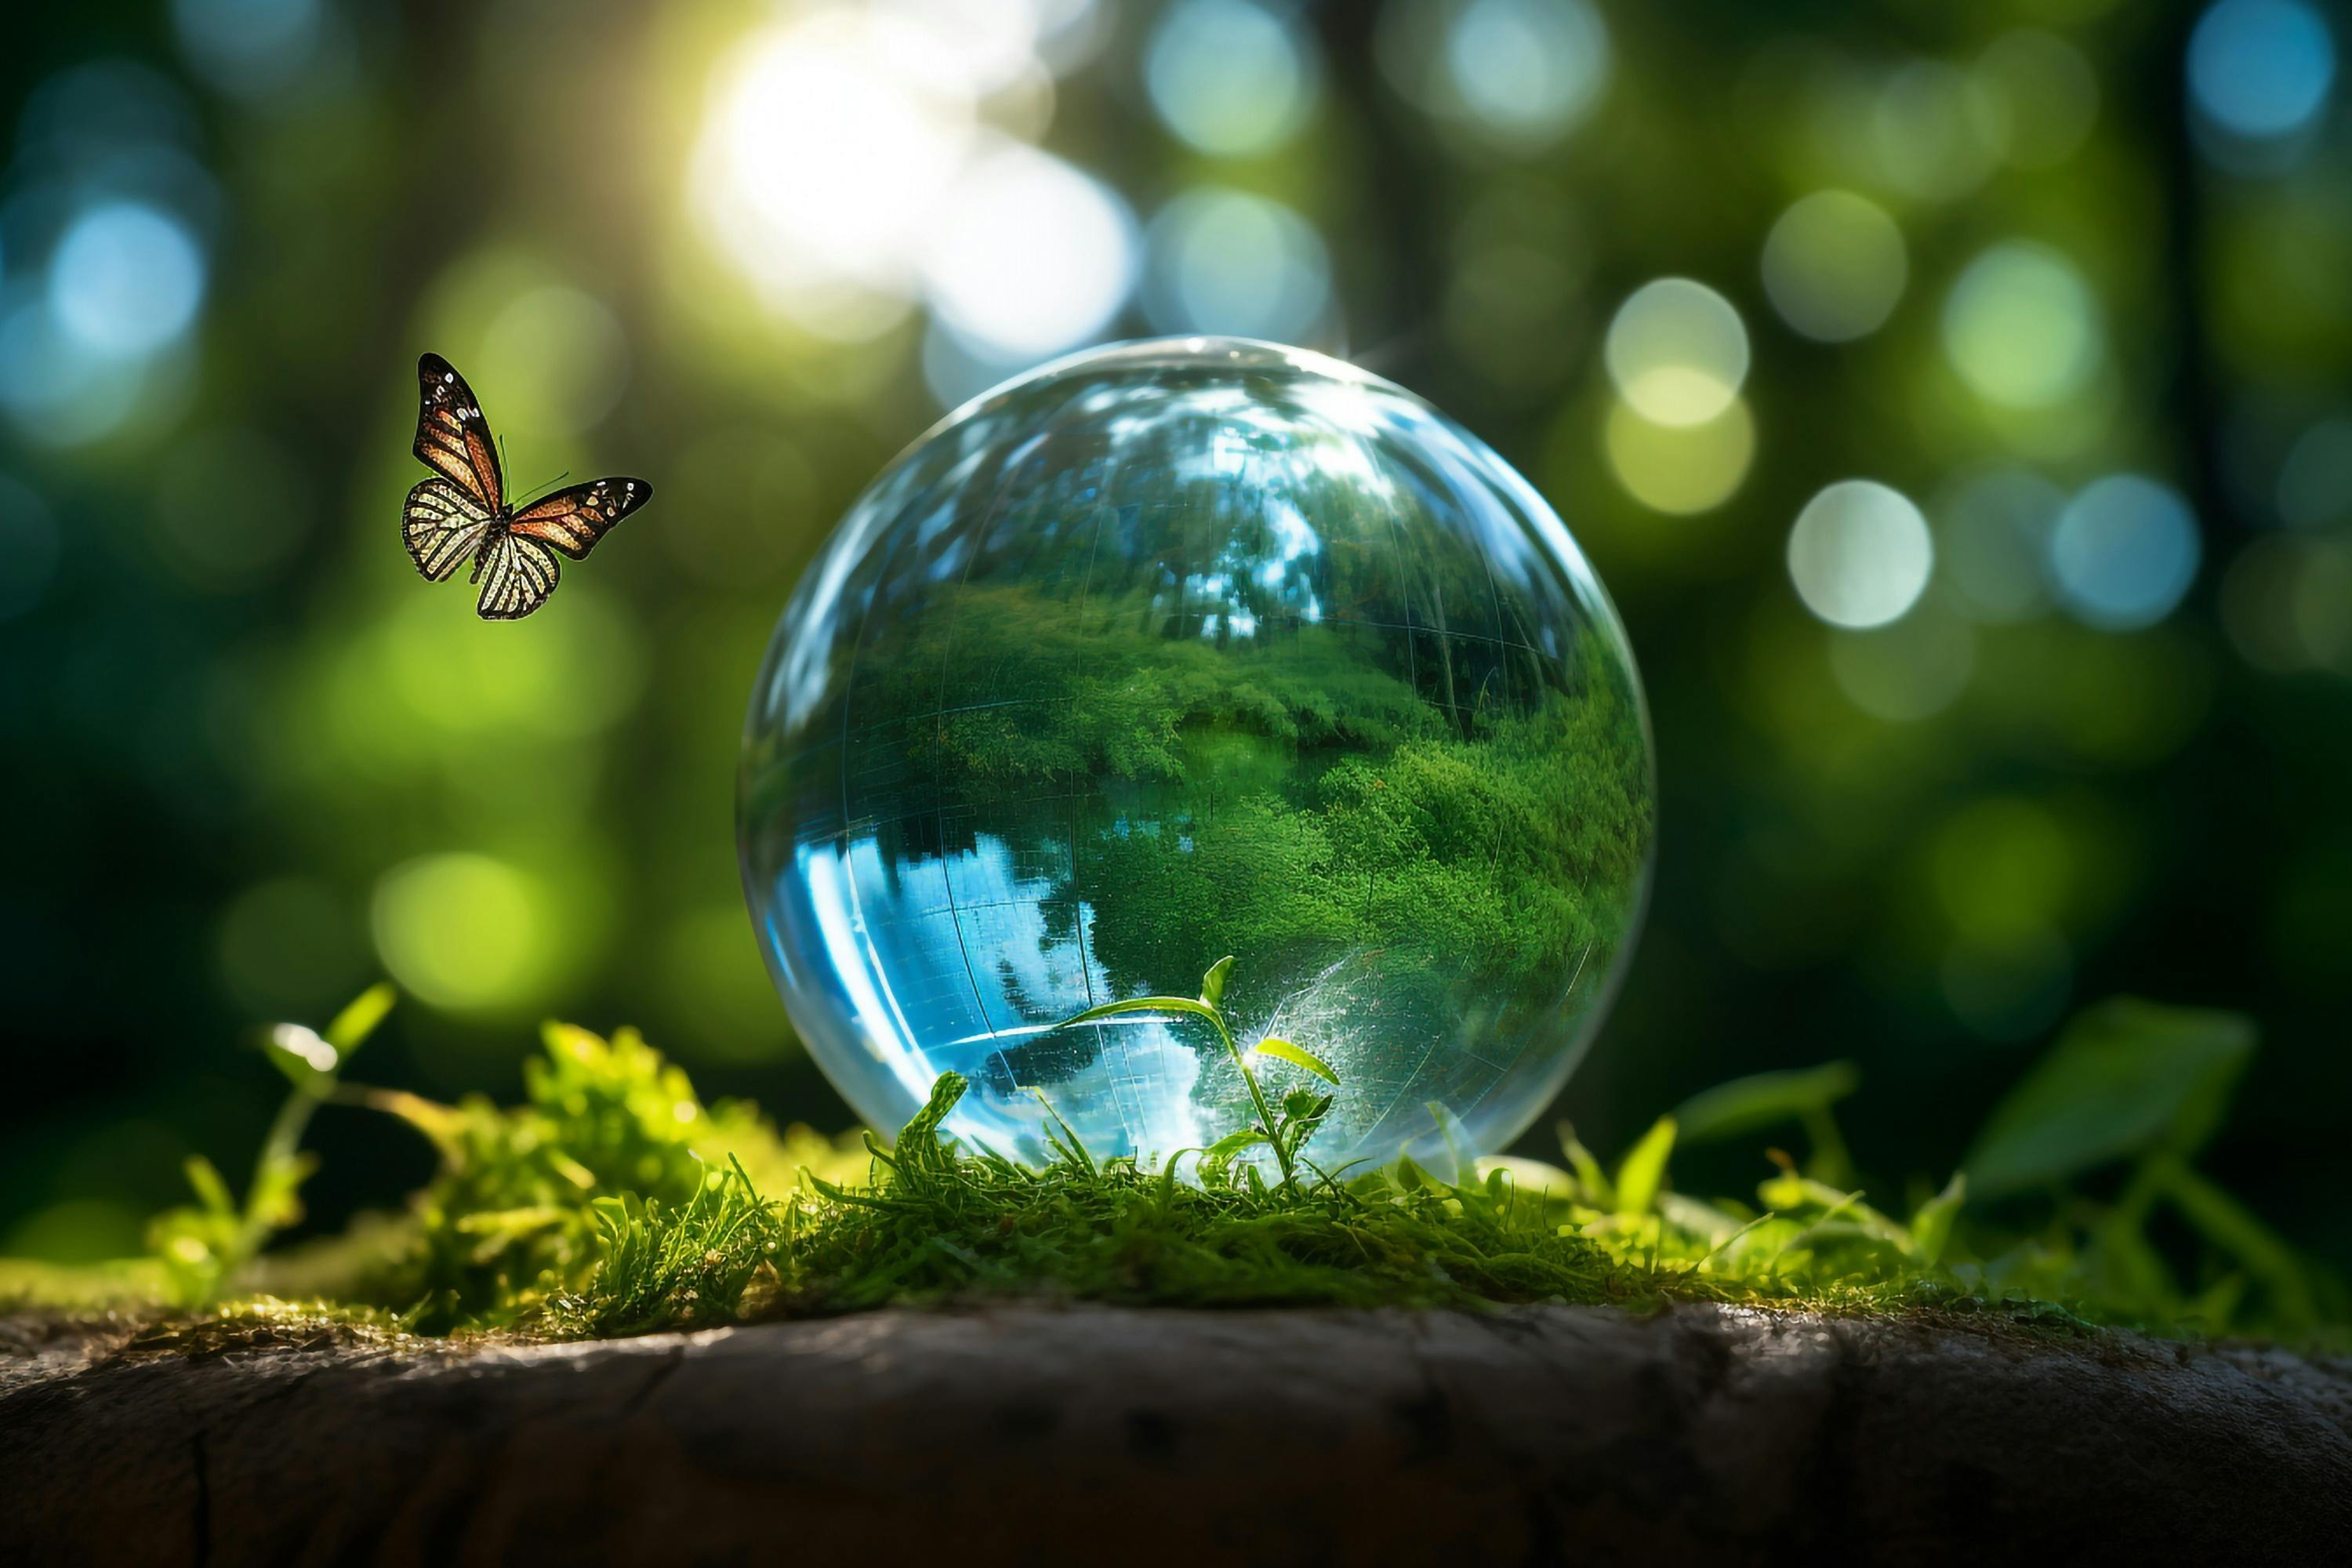 Natur spiegelt sich in Glaskugel auf Moss. in Natur. Schmetterling fliegt über Glaskugel.